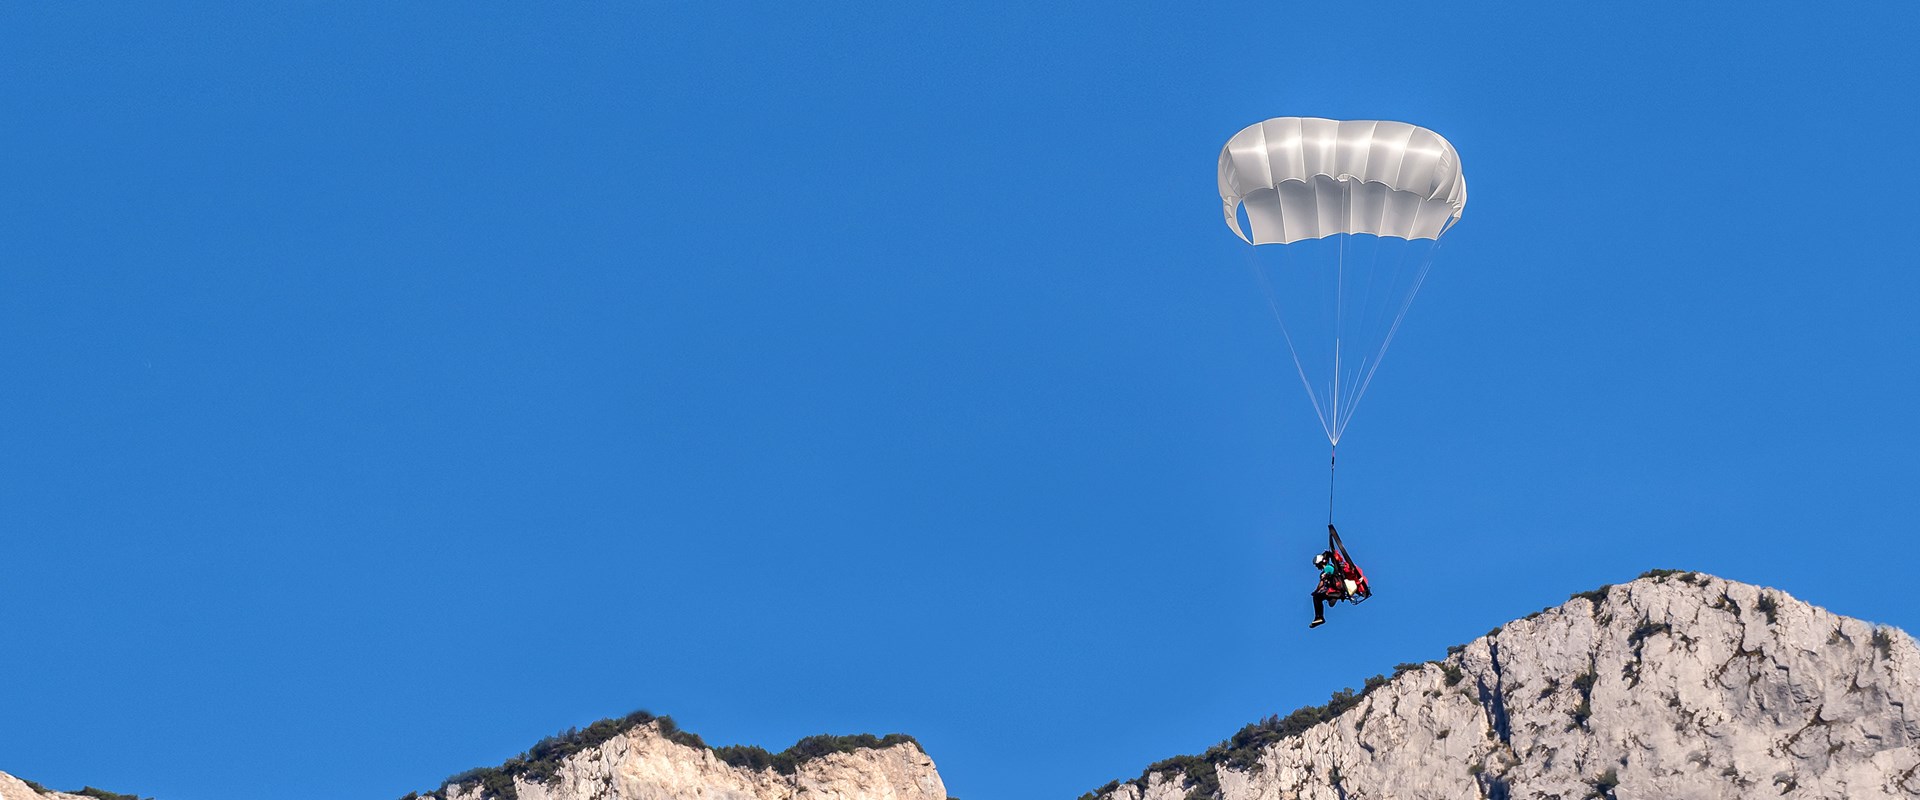 Aegis SQ - Un parachute de secours carré moderne